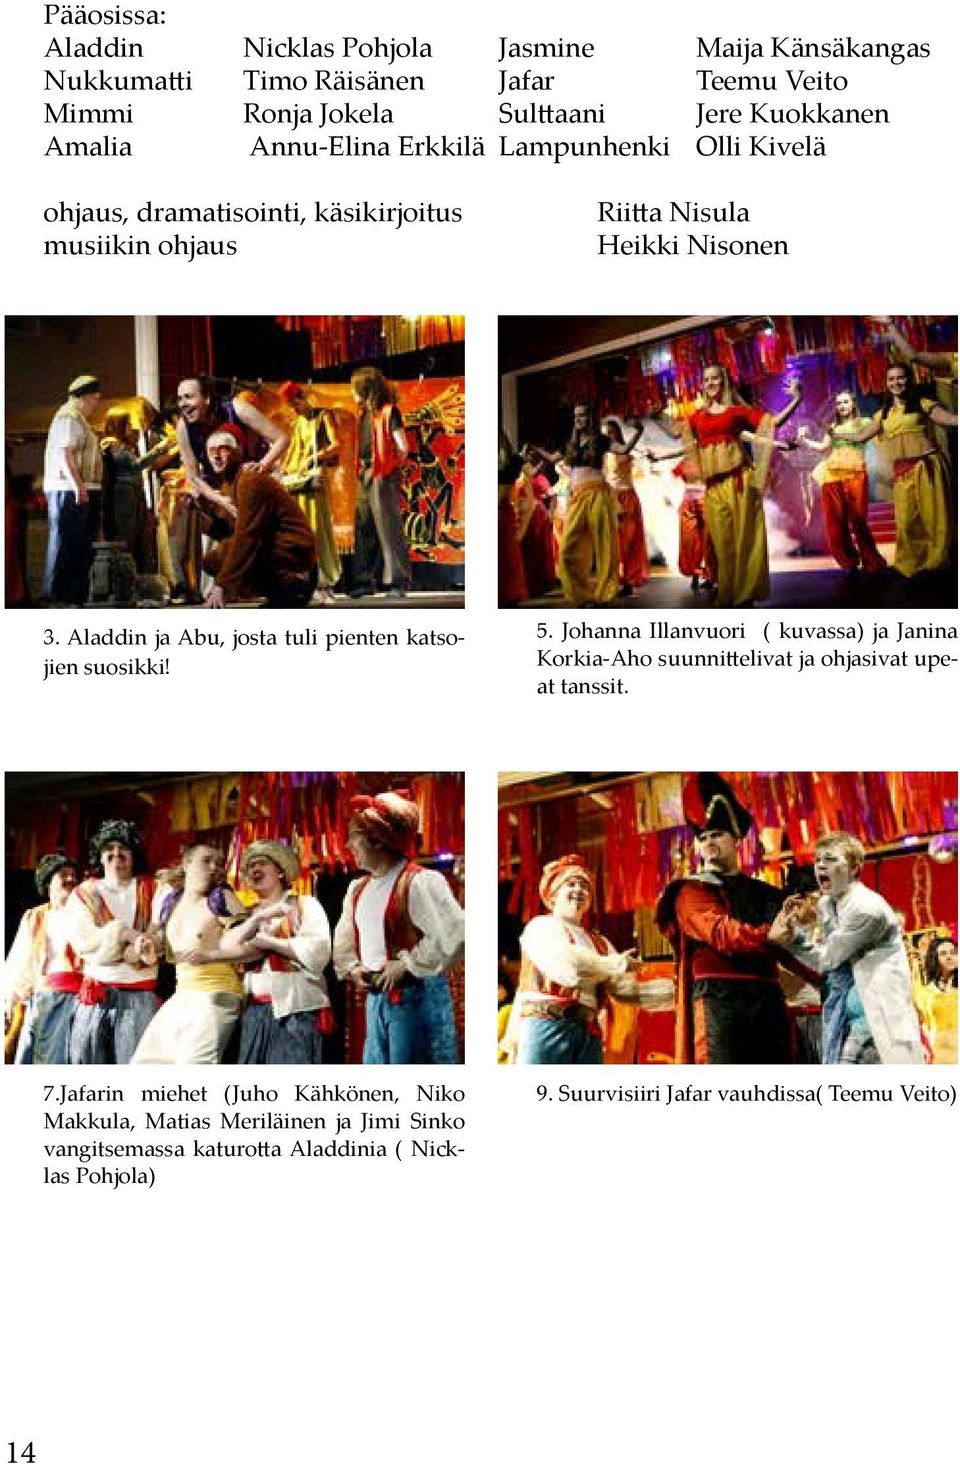 Aladdin ja Abu, josta tuli pienten katsojien suosikki! 5. Johanna Illanvuori ( kuvassa) ja Janina Korkia-Aho suunnittelivat ja ohjasivat upeat tanssit. 7.